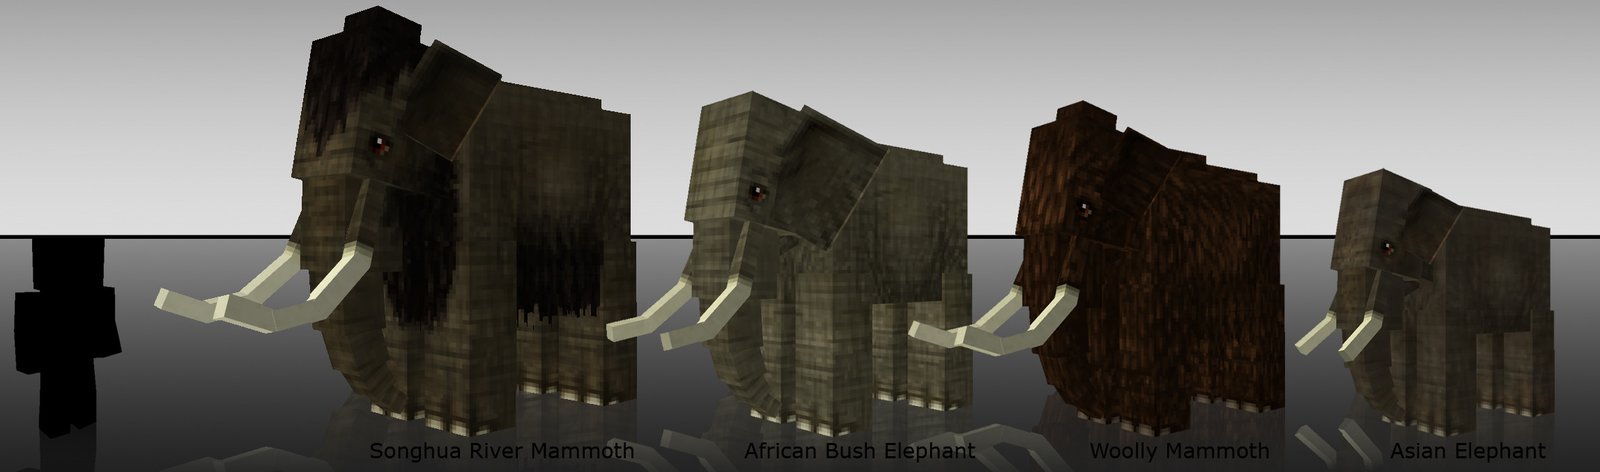 Моды на майнкрафт слоник